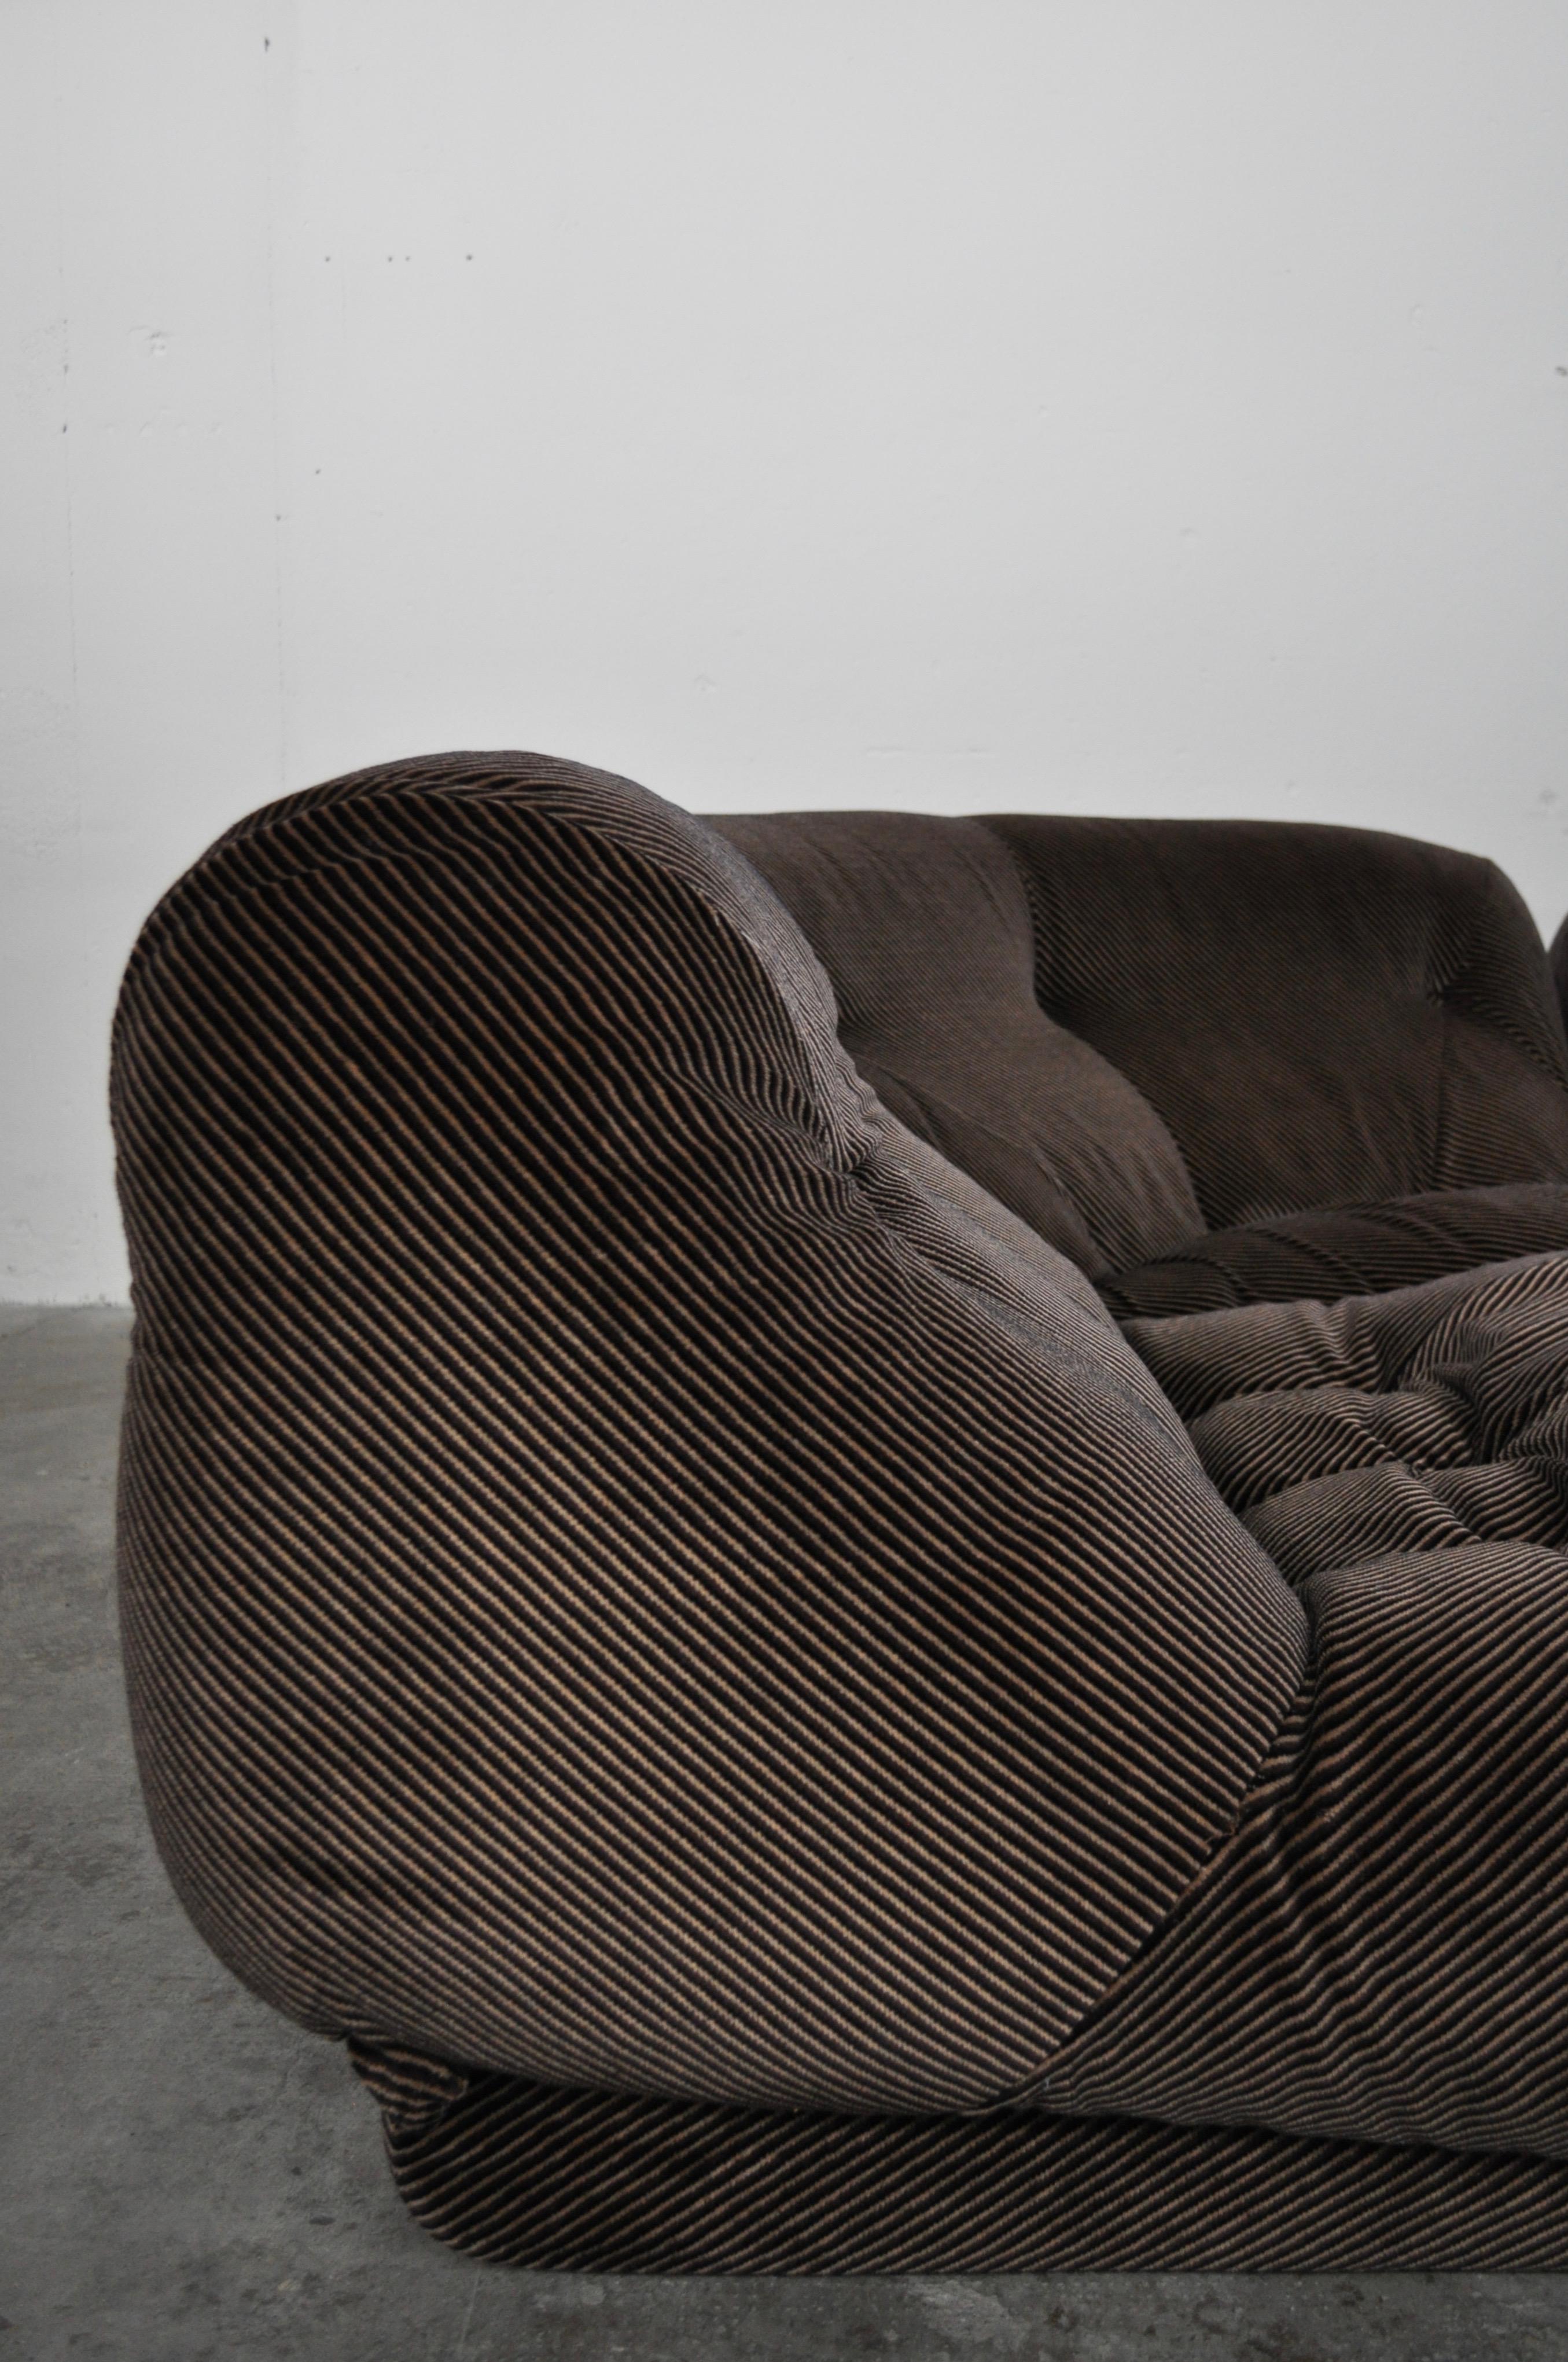 Set angolar Nuvolone modular sofa model by Rino Maturi for Mimo Leone & Co. Chenille brown fabric.



 